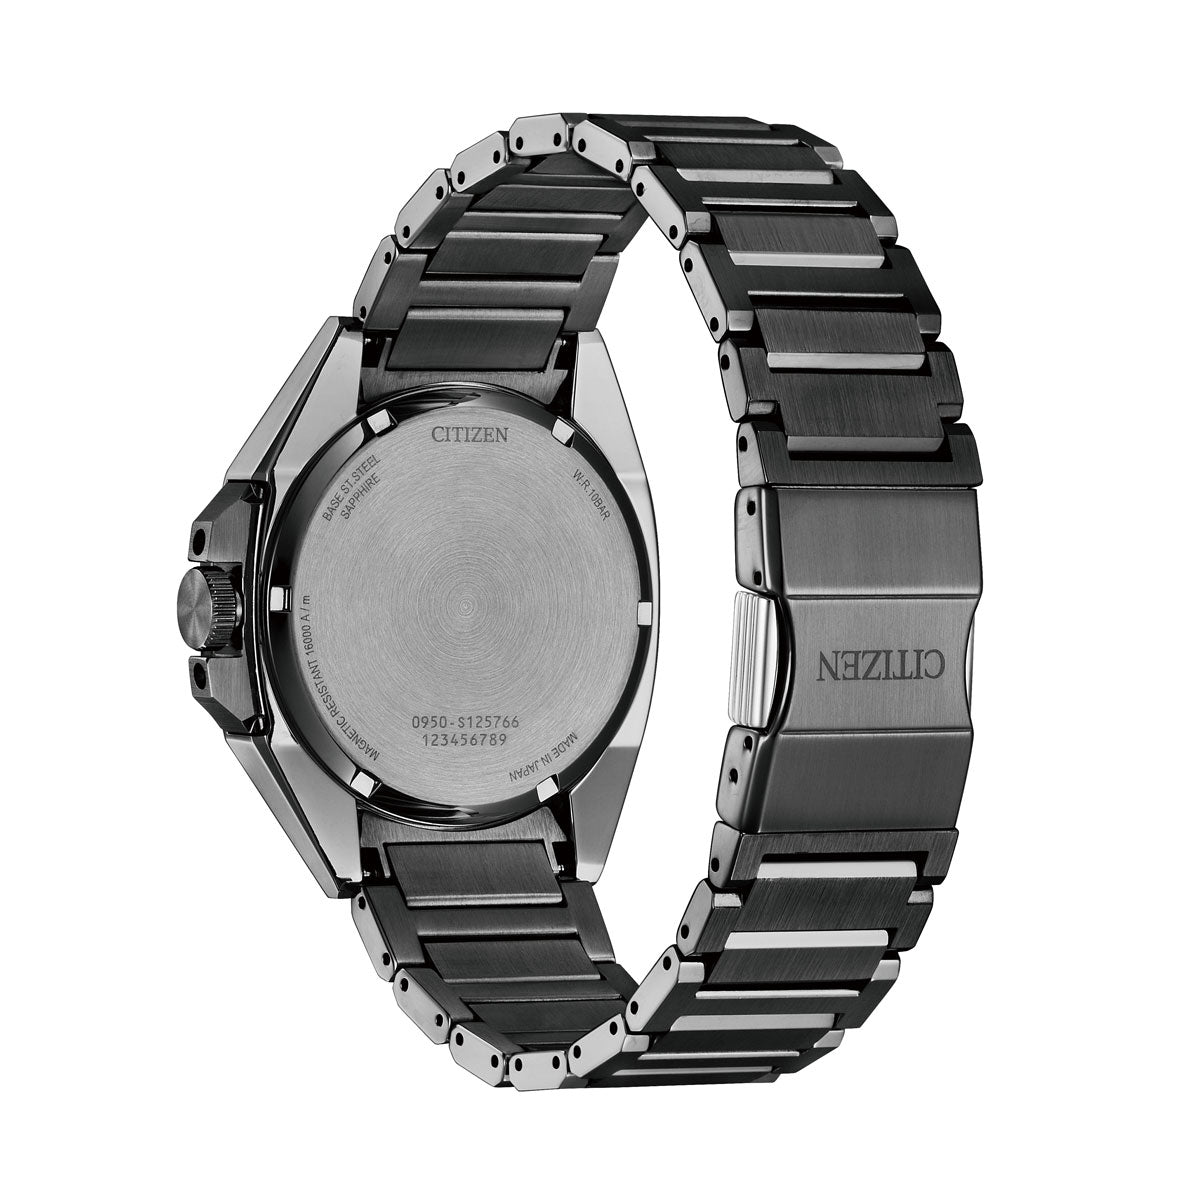 シチズン シリーズエイト CITIZEN Series 8 メカニカル 830 自動巻き 機械式 腕時計 メンズ NA1015-81Z